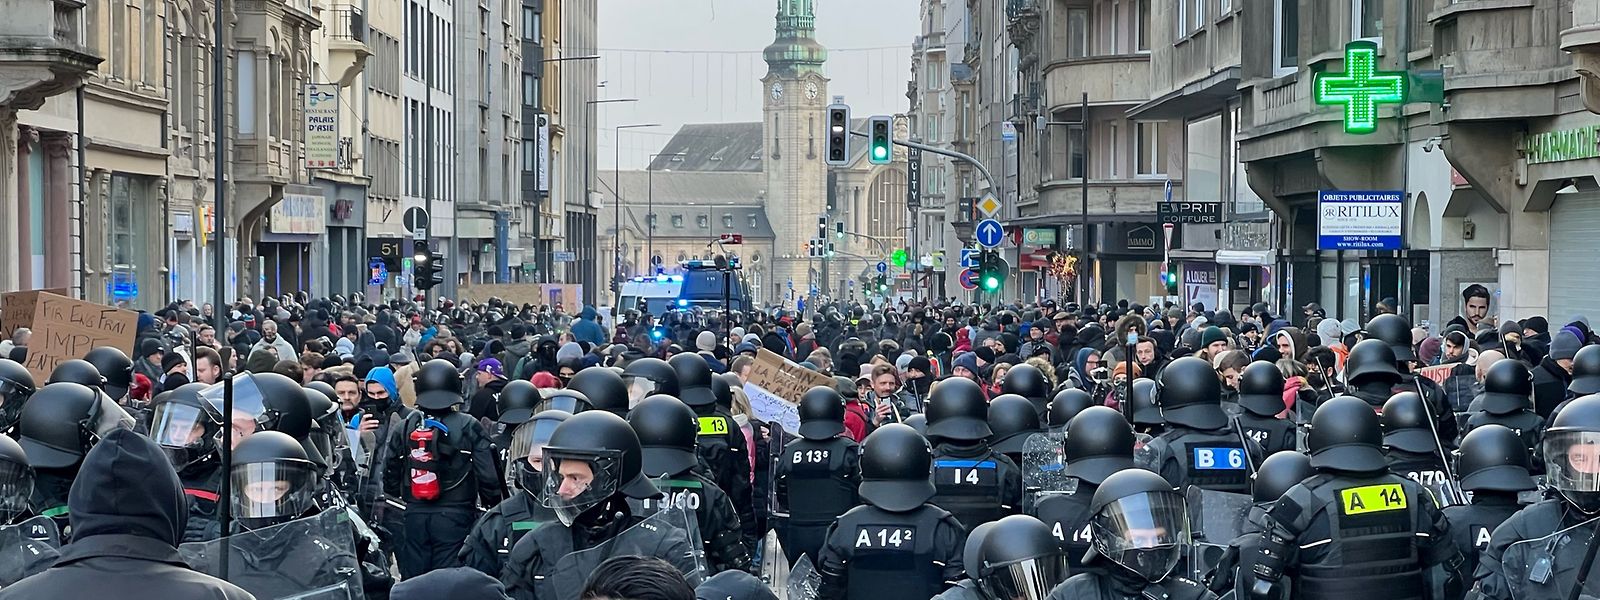 Rund 350 Menschen haben sich nach den Angaben der Polizei nahe dem Hauptbahnhof versammelt. 